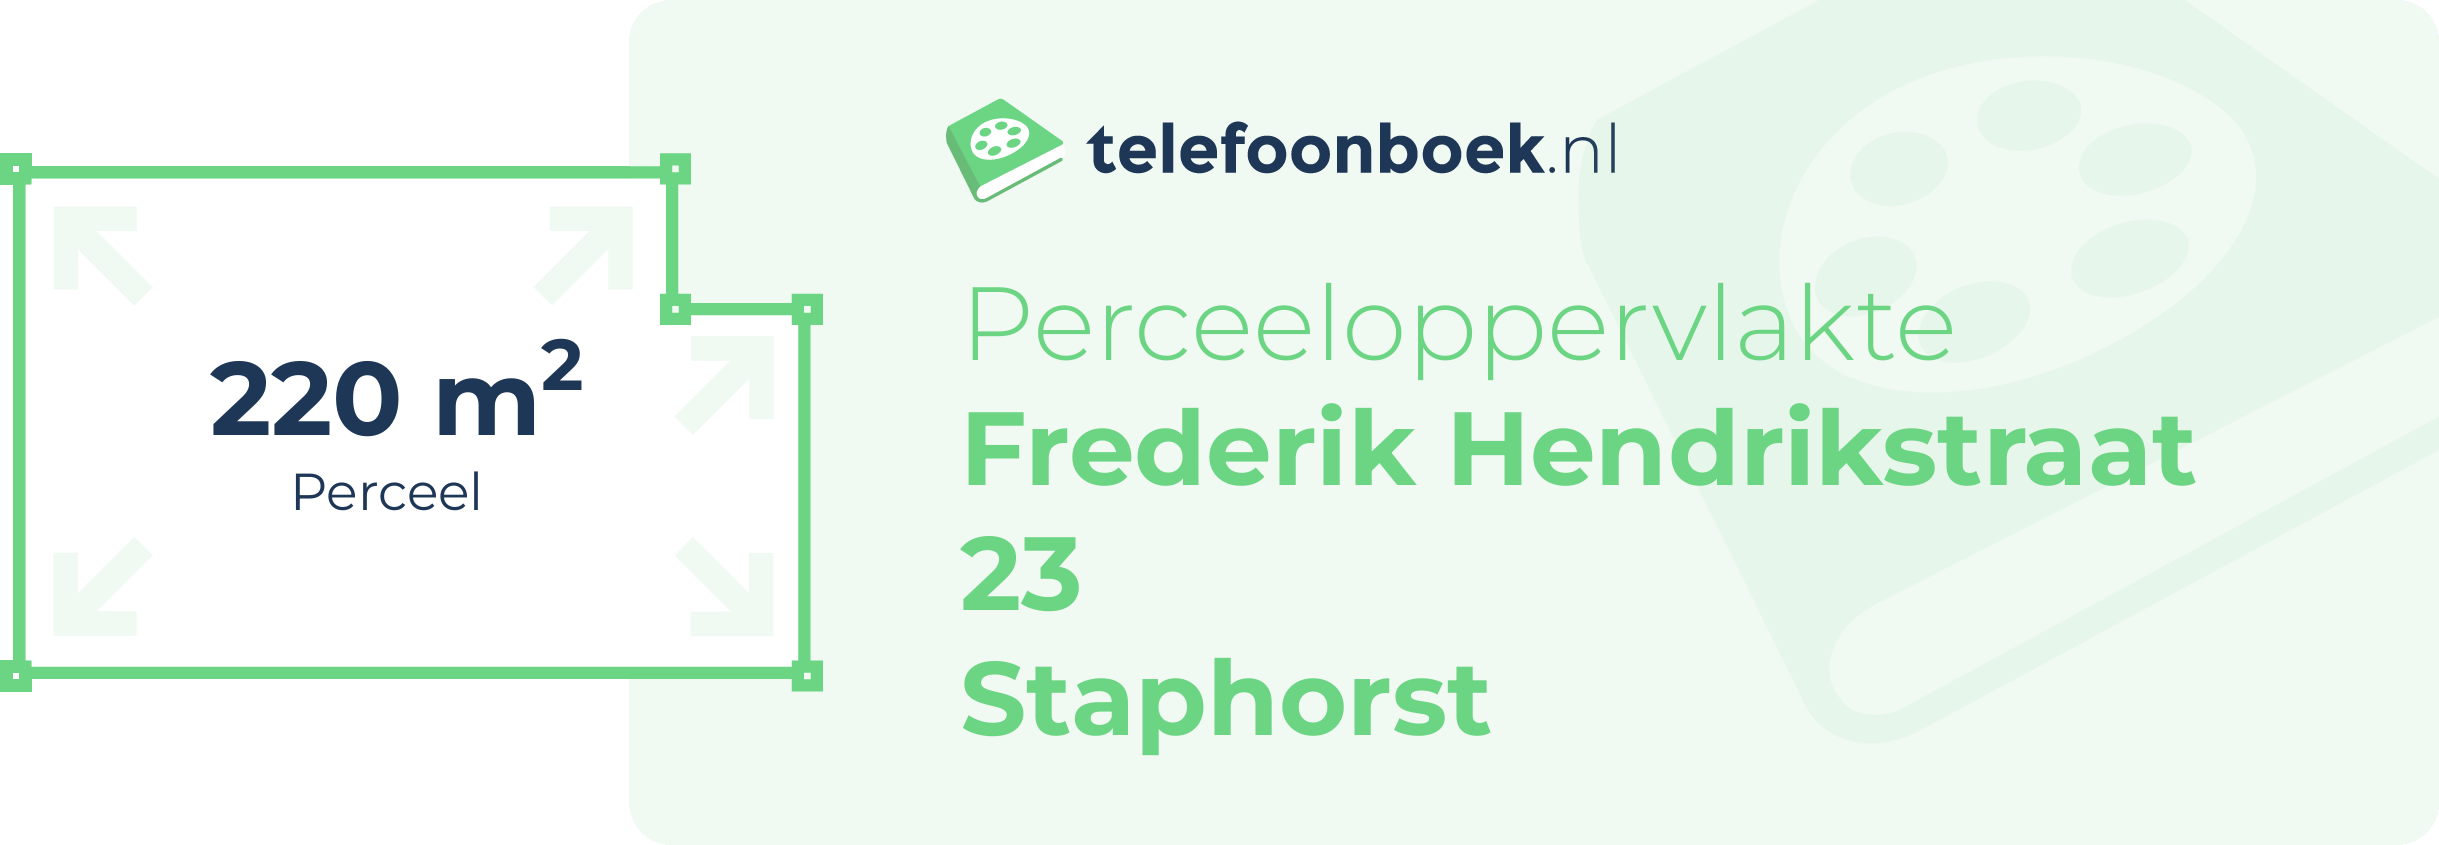 Perceeloppervlakte Frederik Hendrikstraat 23 Staphorst